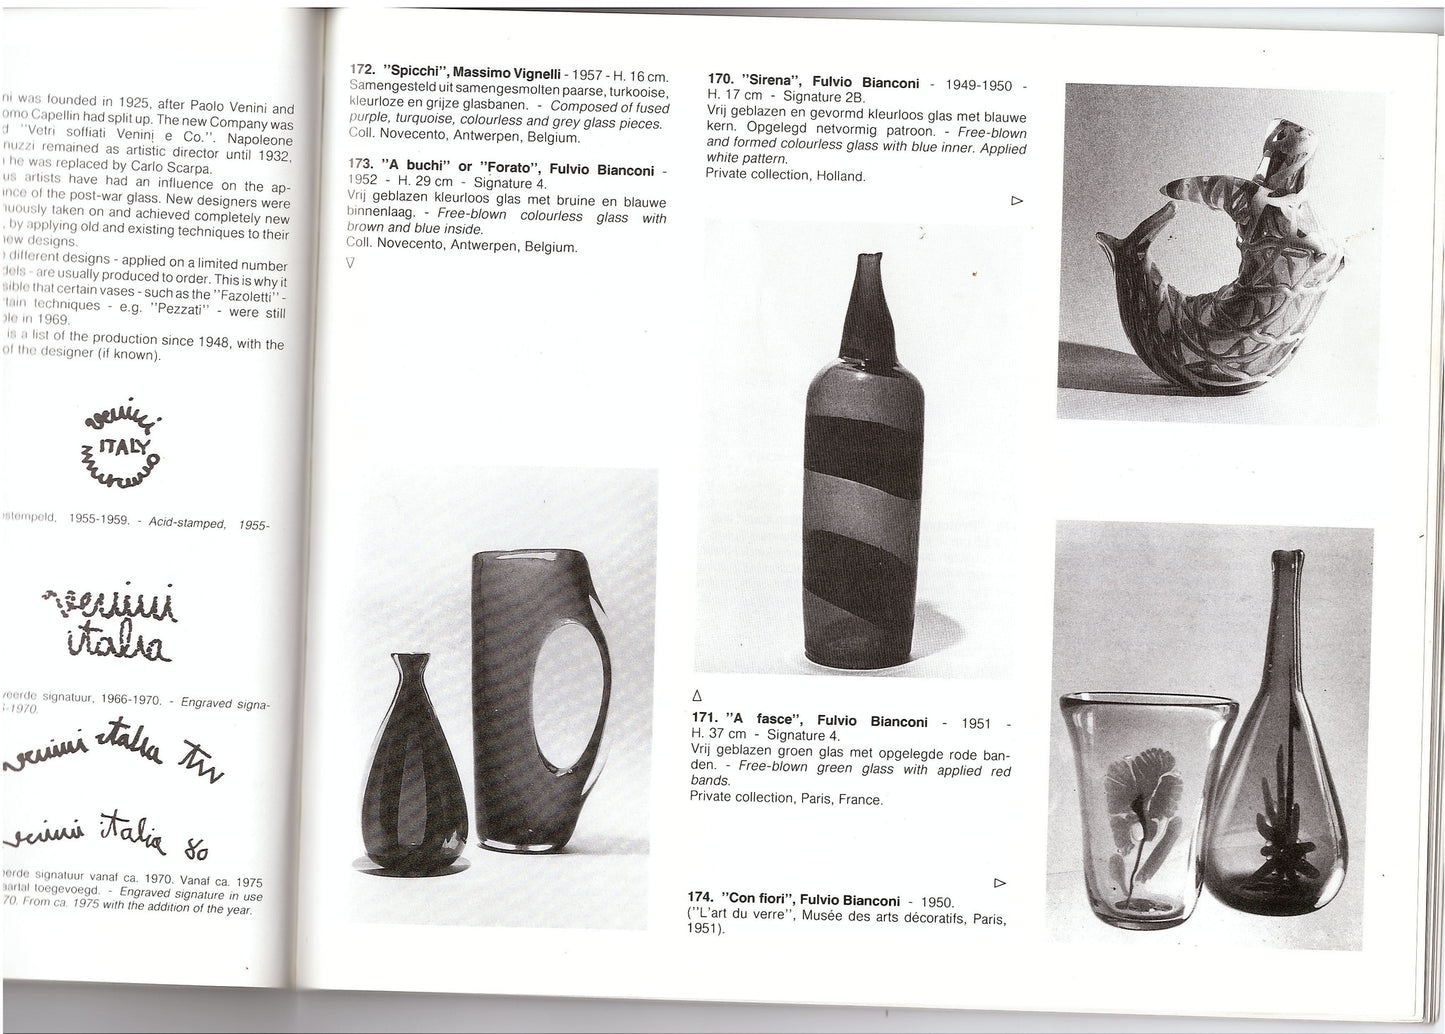 Fulvio Bianconi, rare 'Con Fiori' vase, 1950